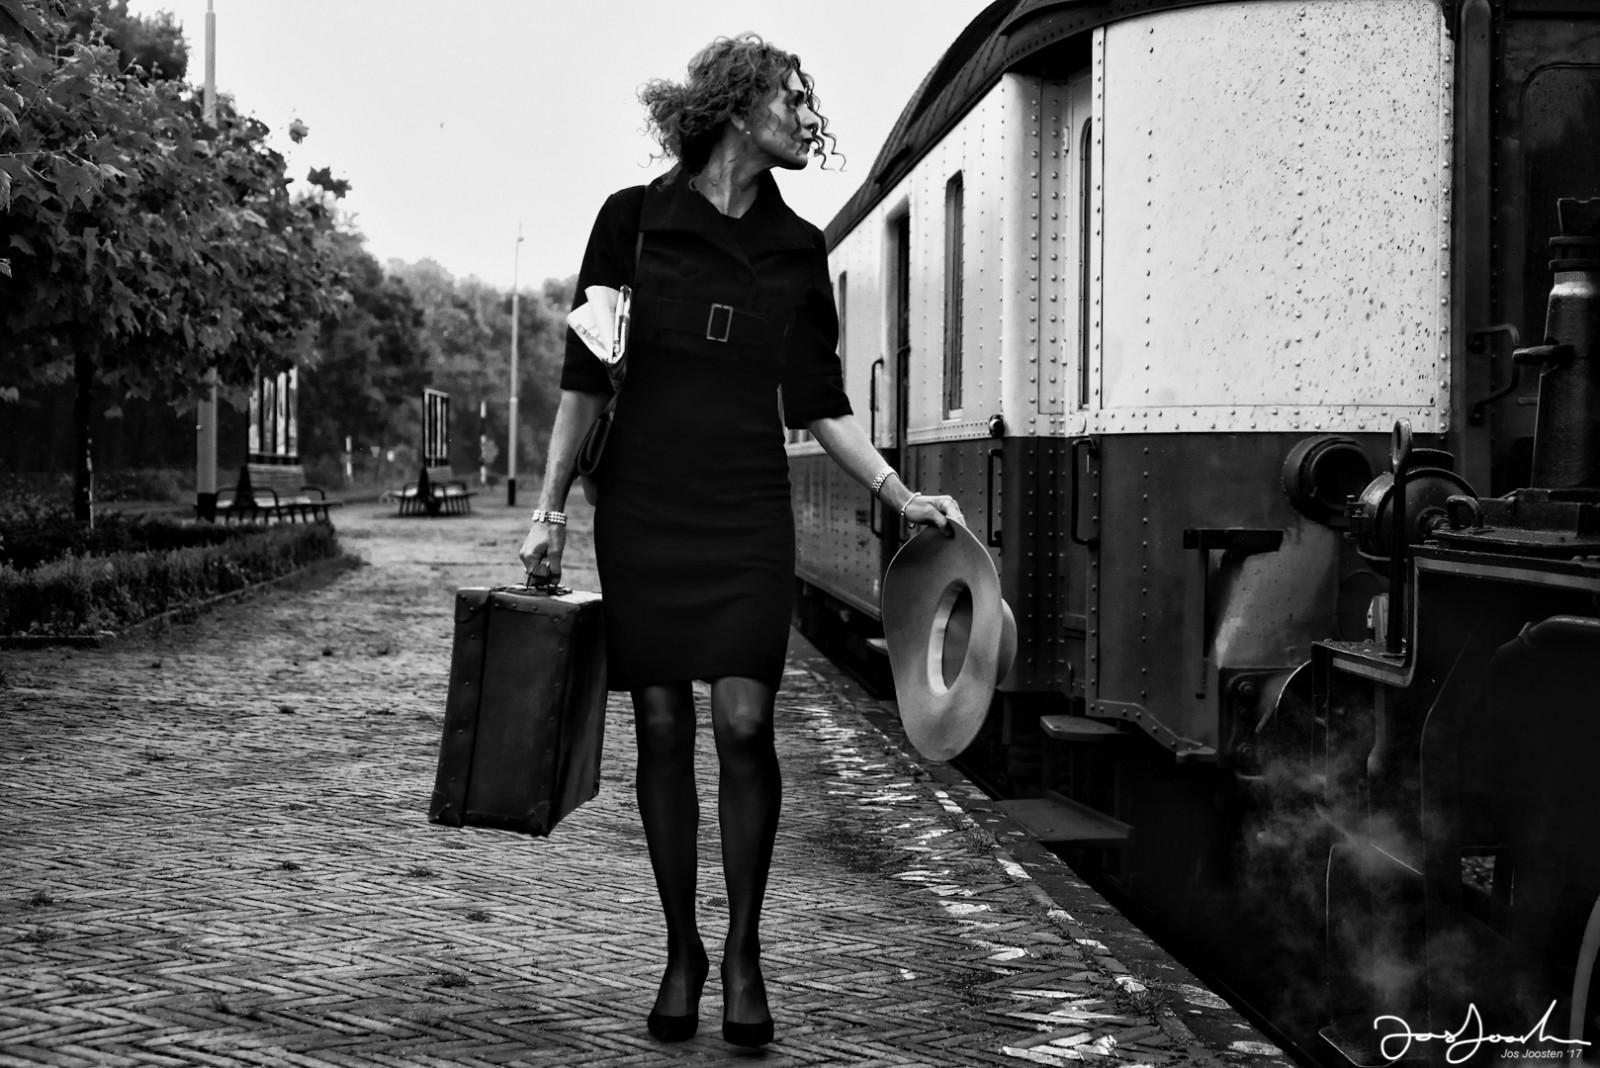 Leer over composities in fotografie dame met trein door Jos Joosten